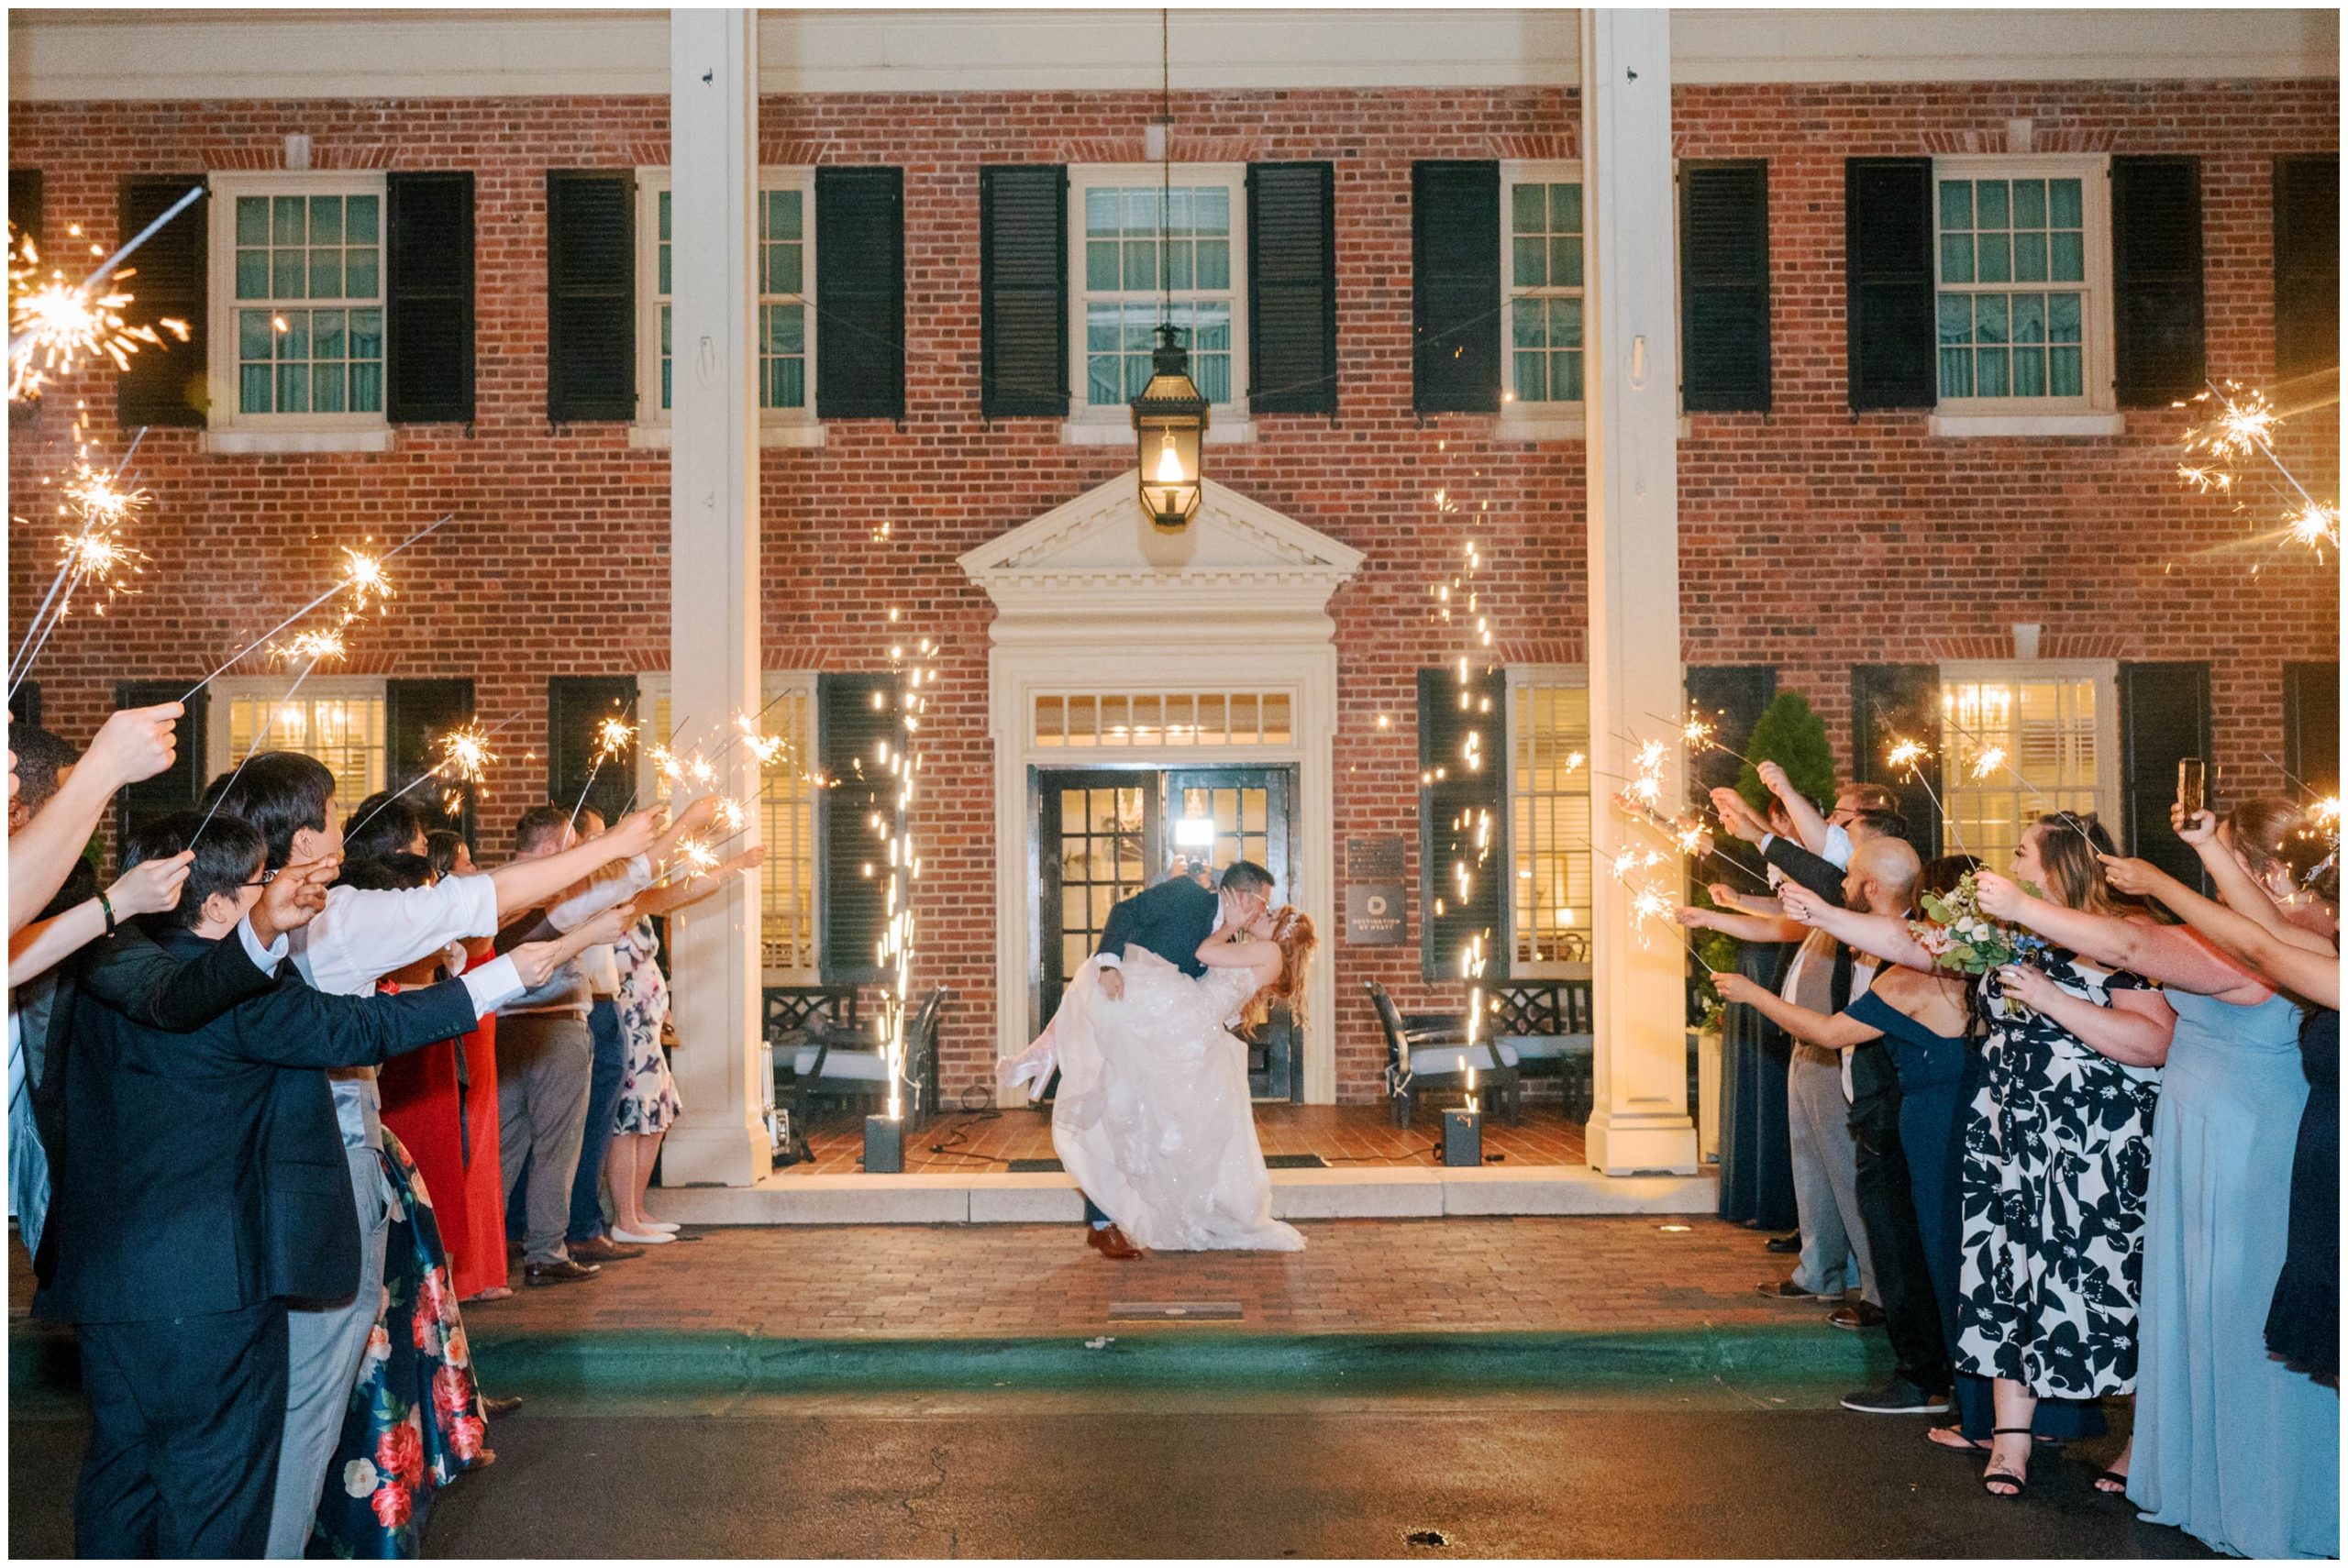 Bride and groom sparkler exit